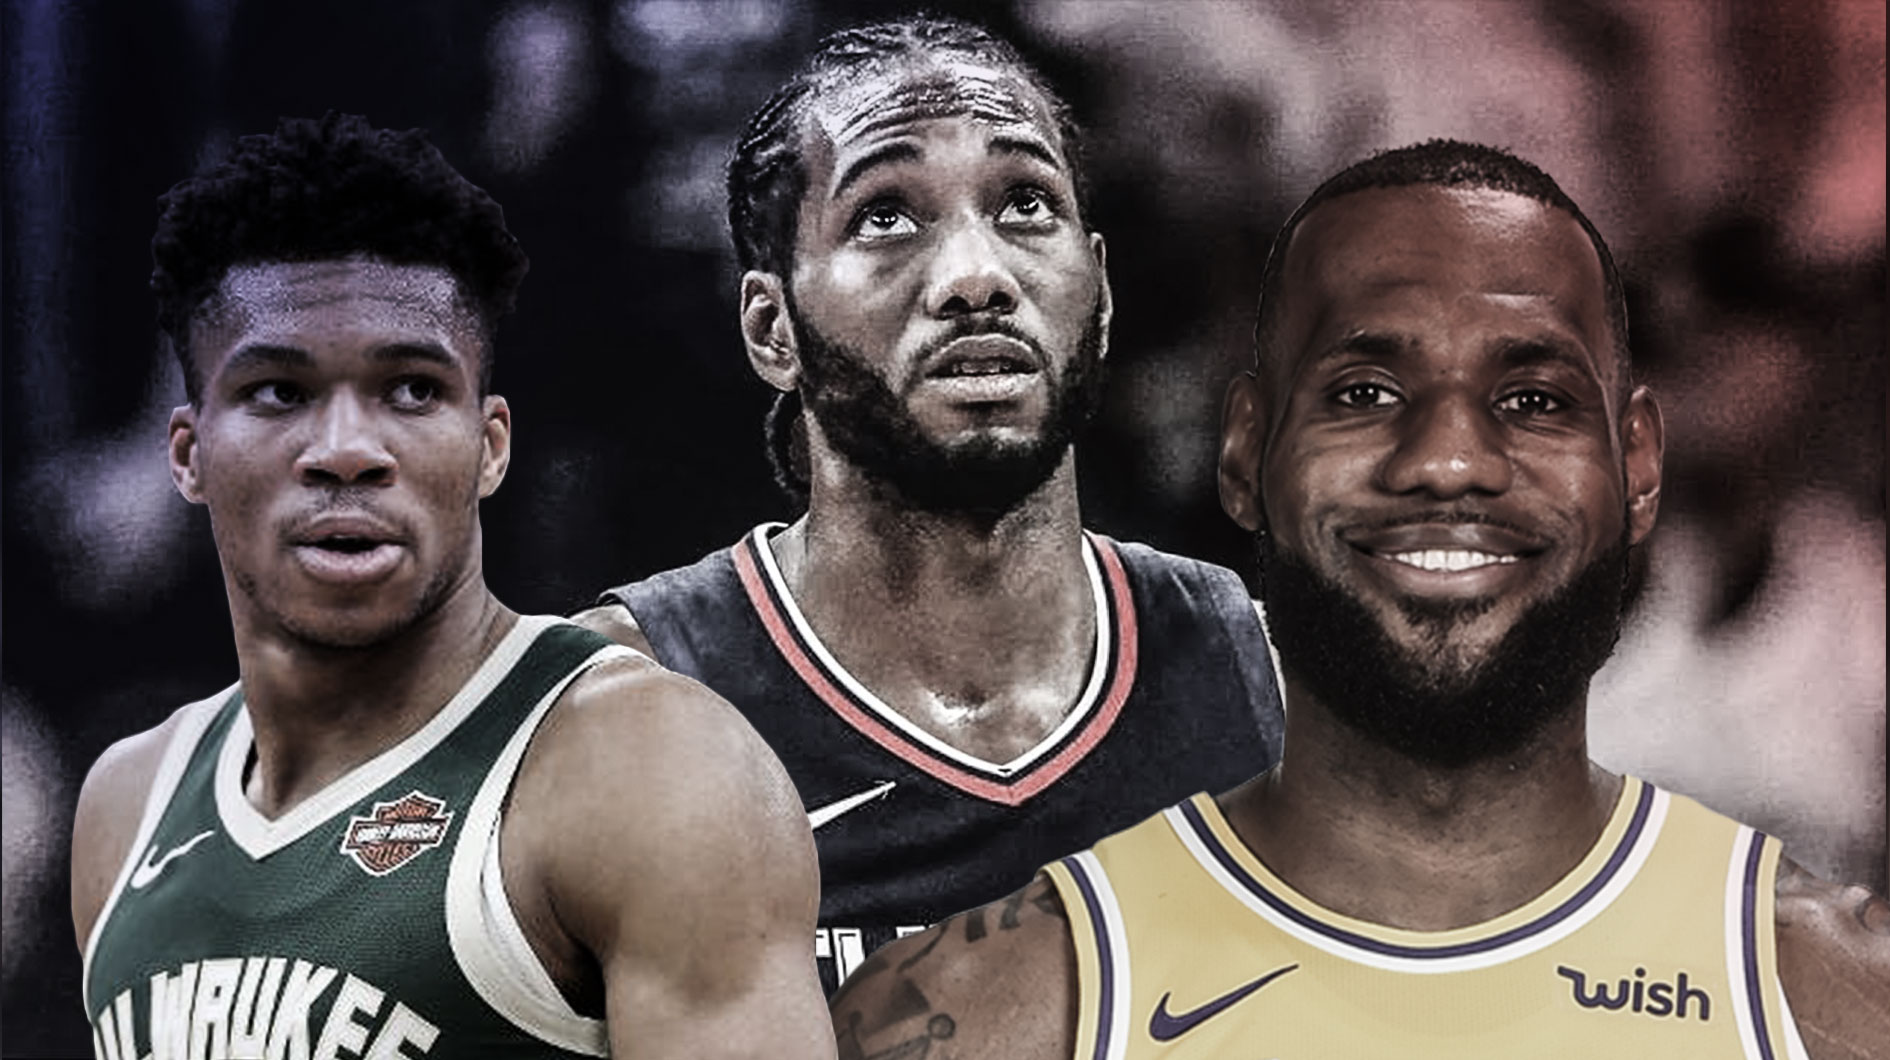 Site lista os 100 melhores jogadores da NBA atualmente